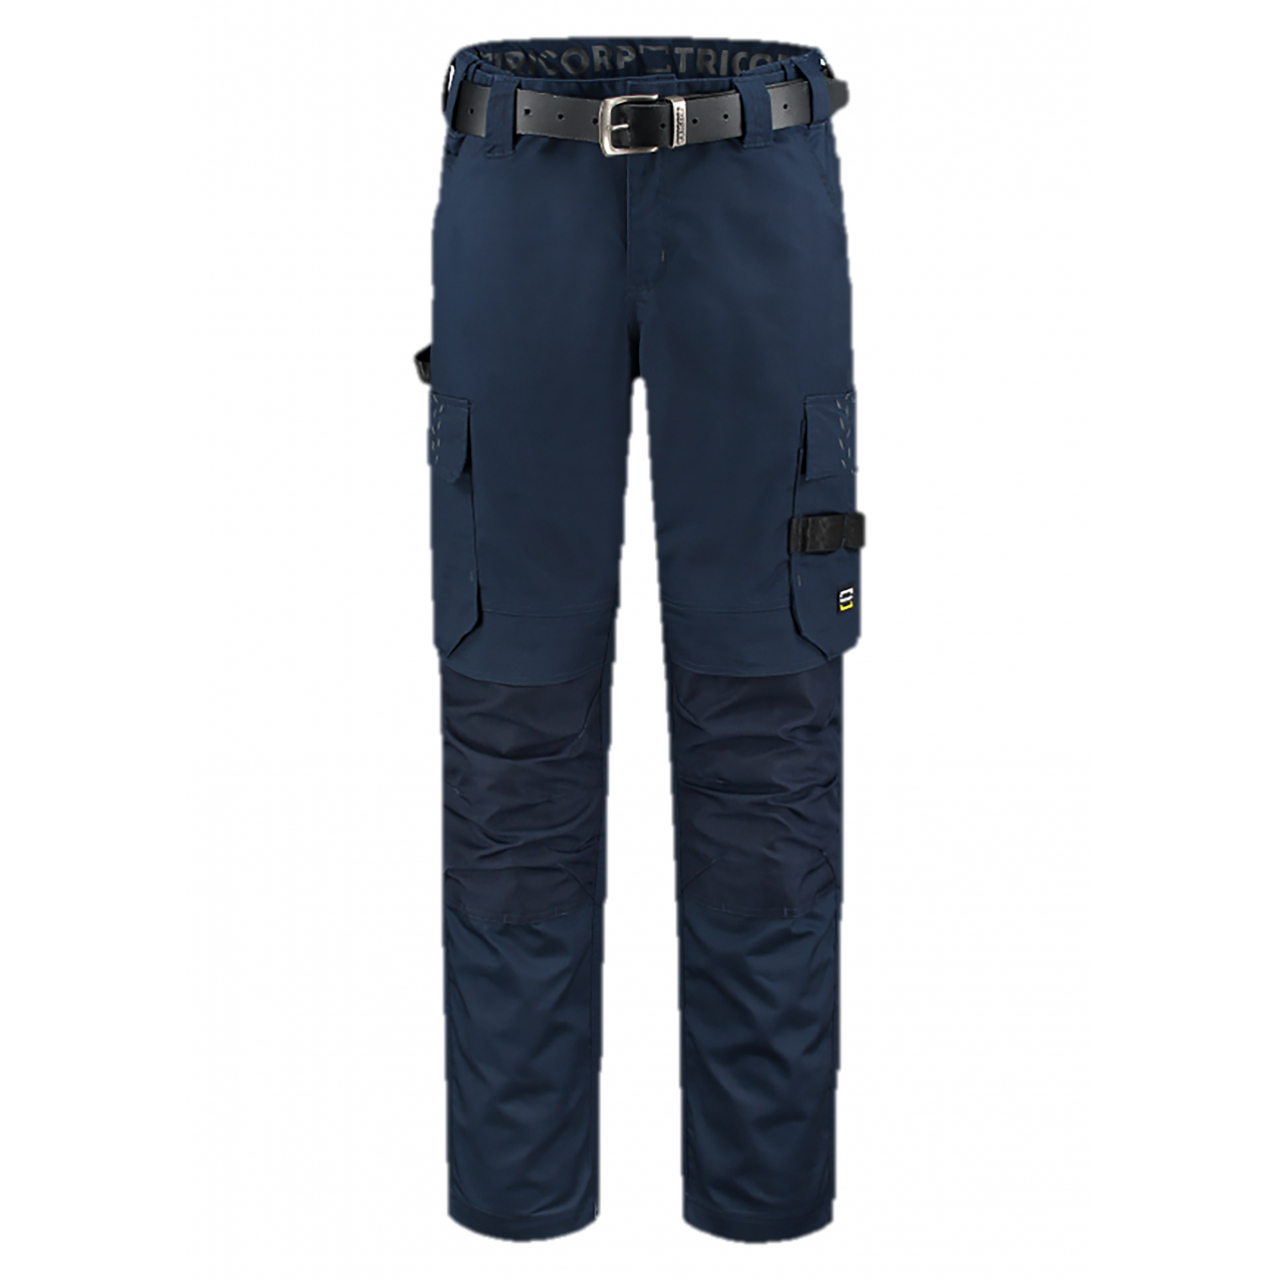 Pracovní kalhoty unisex Tricorp Work Pants Twill Cordura - modré, 44